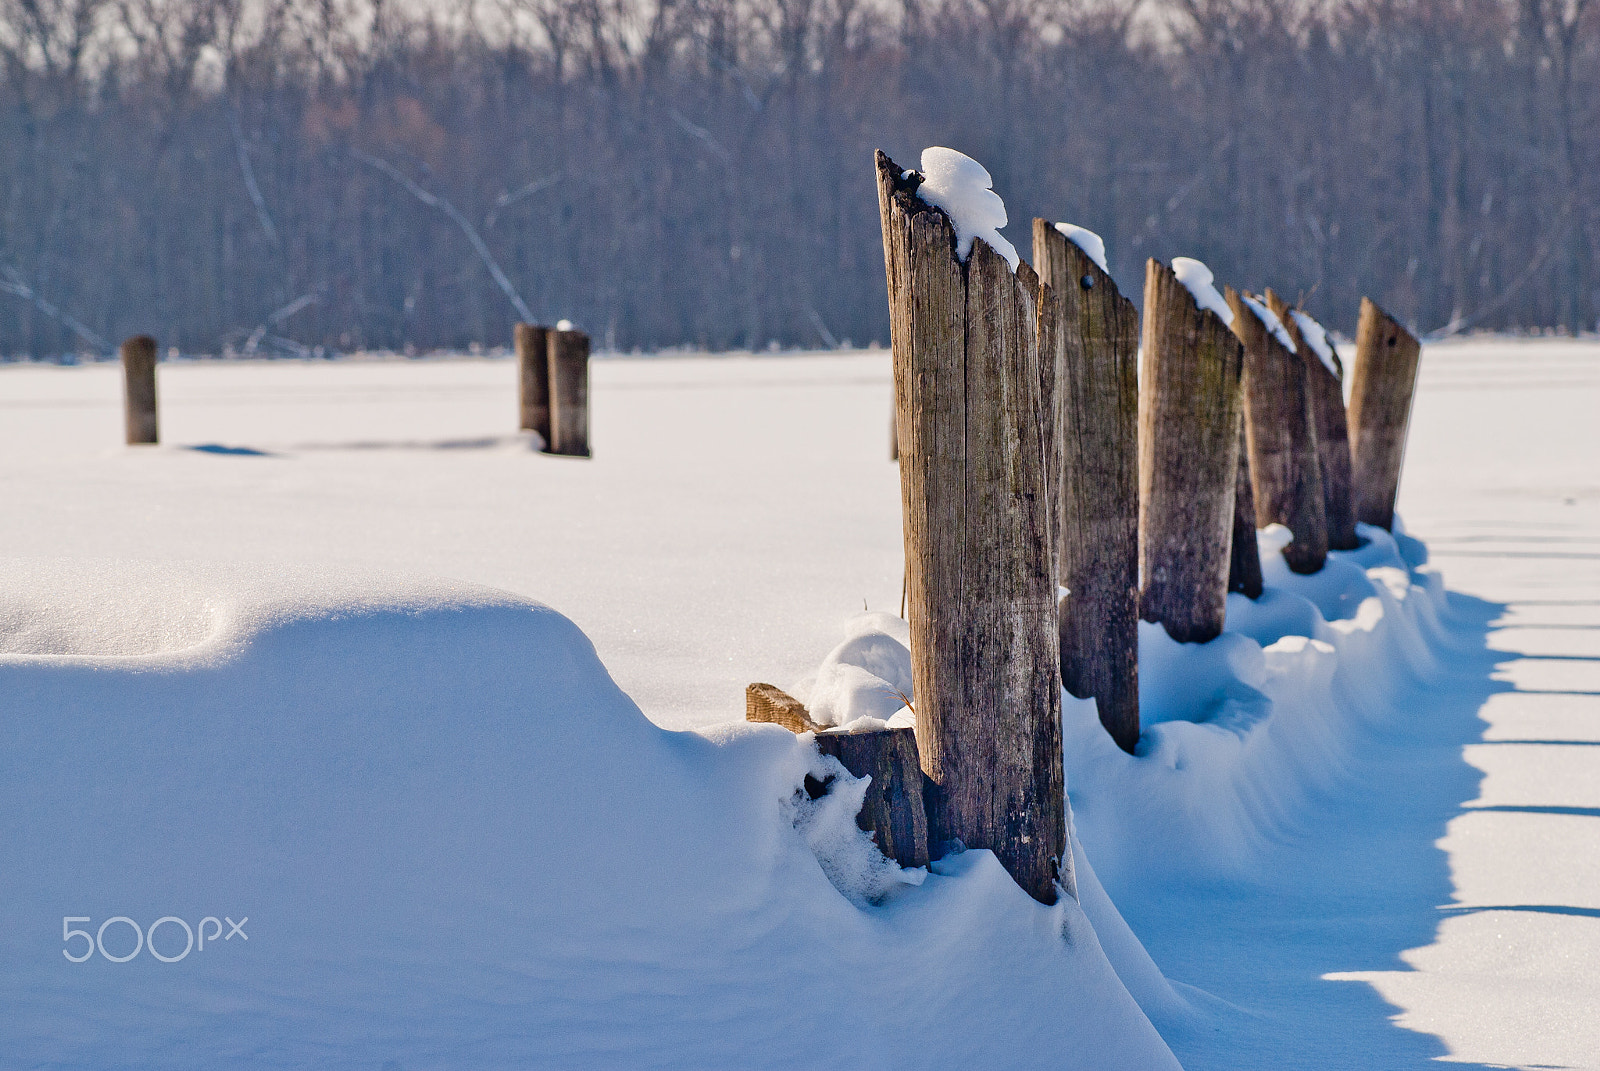 Nikon D200 + AF Zoom-Nikkor 80-200mm f/2.8 ED sample photo. Frozen creve coeur lake photography